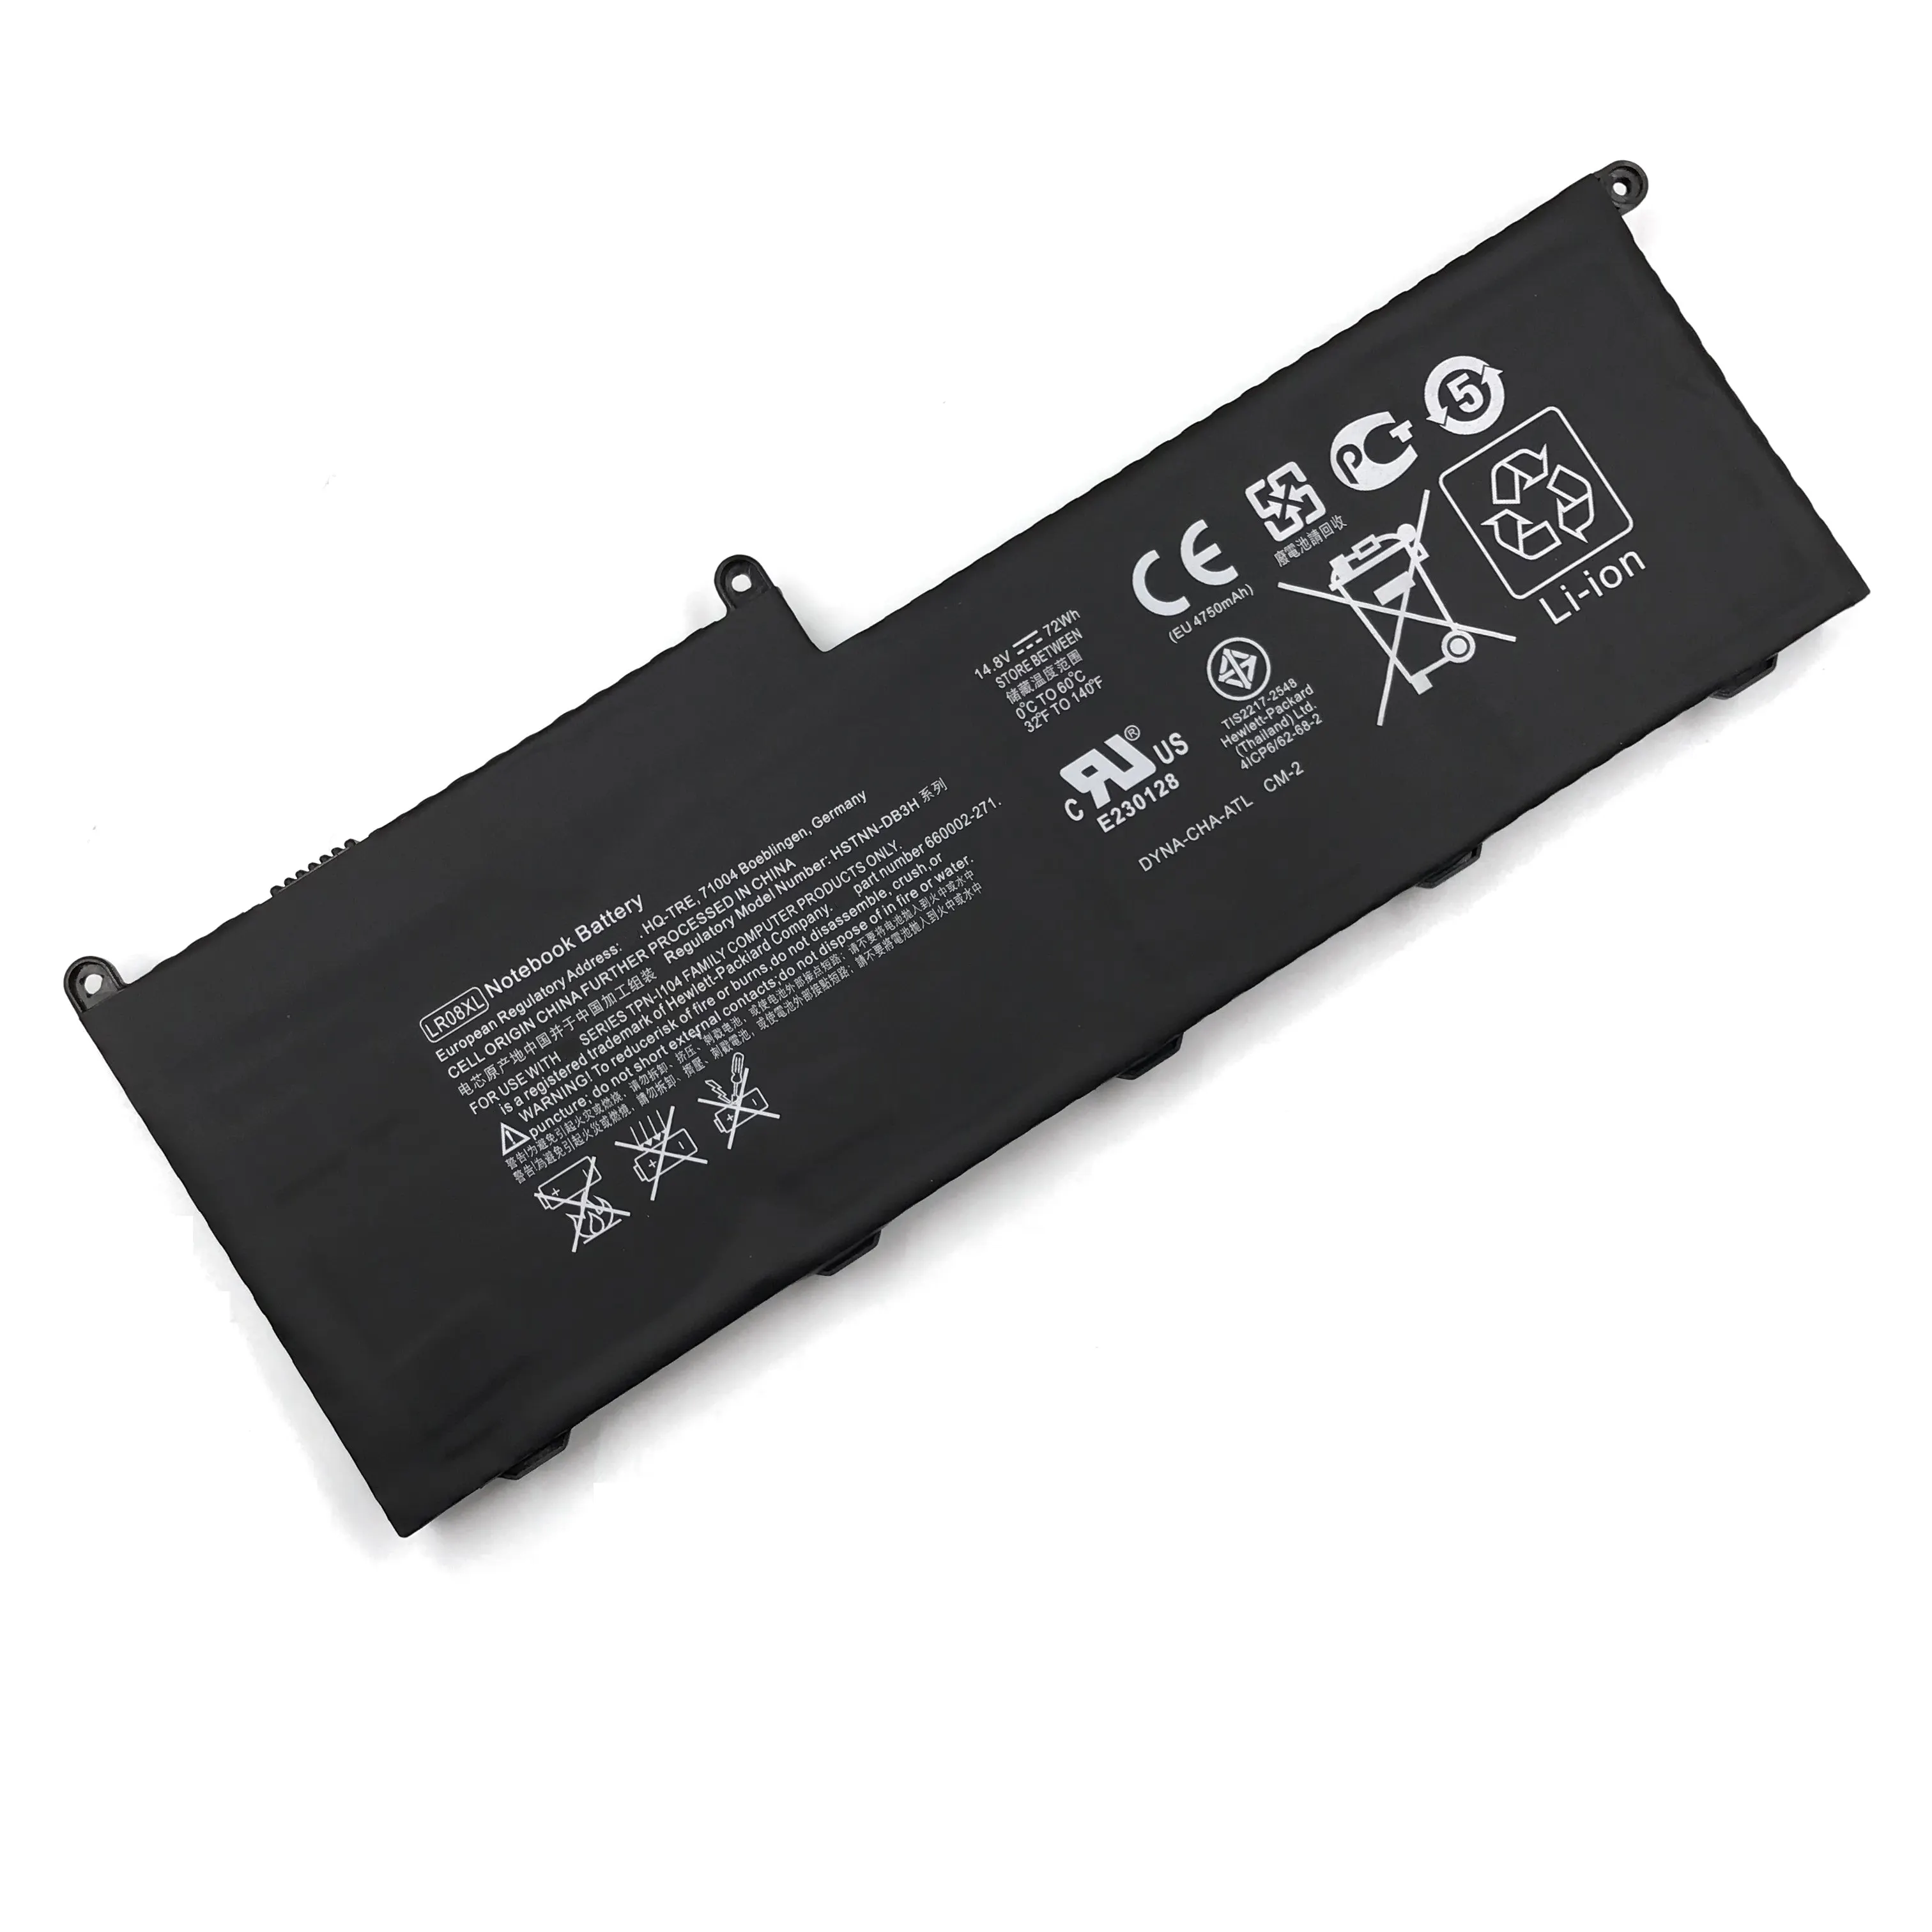 LR08XL लैपटॉप बैटरी 14.8V 4800mAh (72Wh) हिमाचल प्रदेश ईर्ष्या 15 के लिए 8 सेल लैपटॉप बैटरी